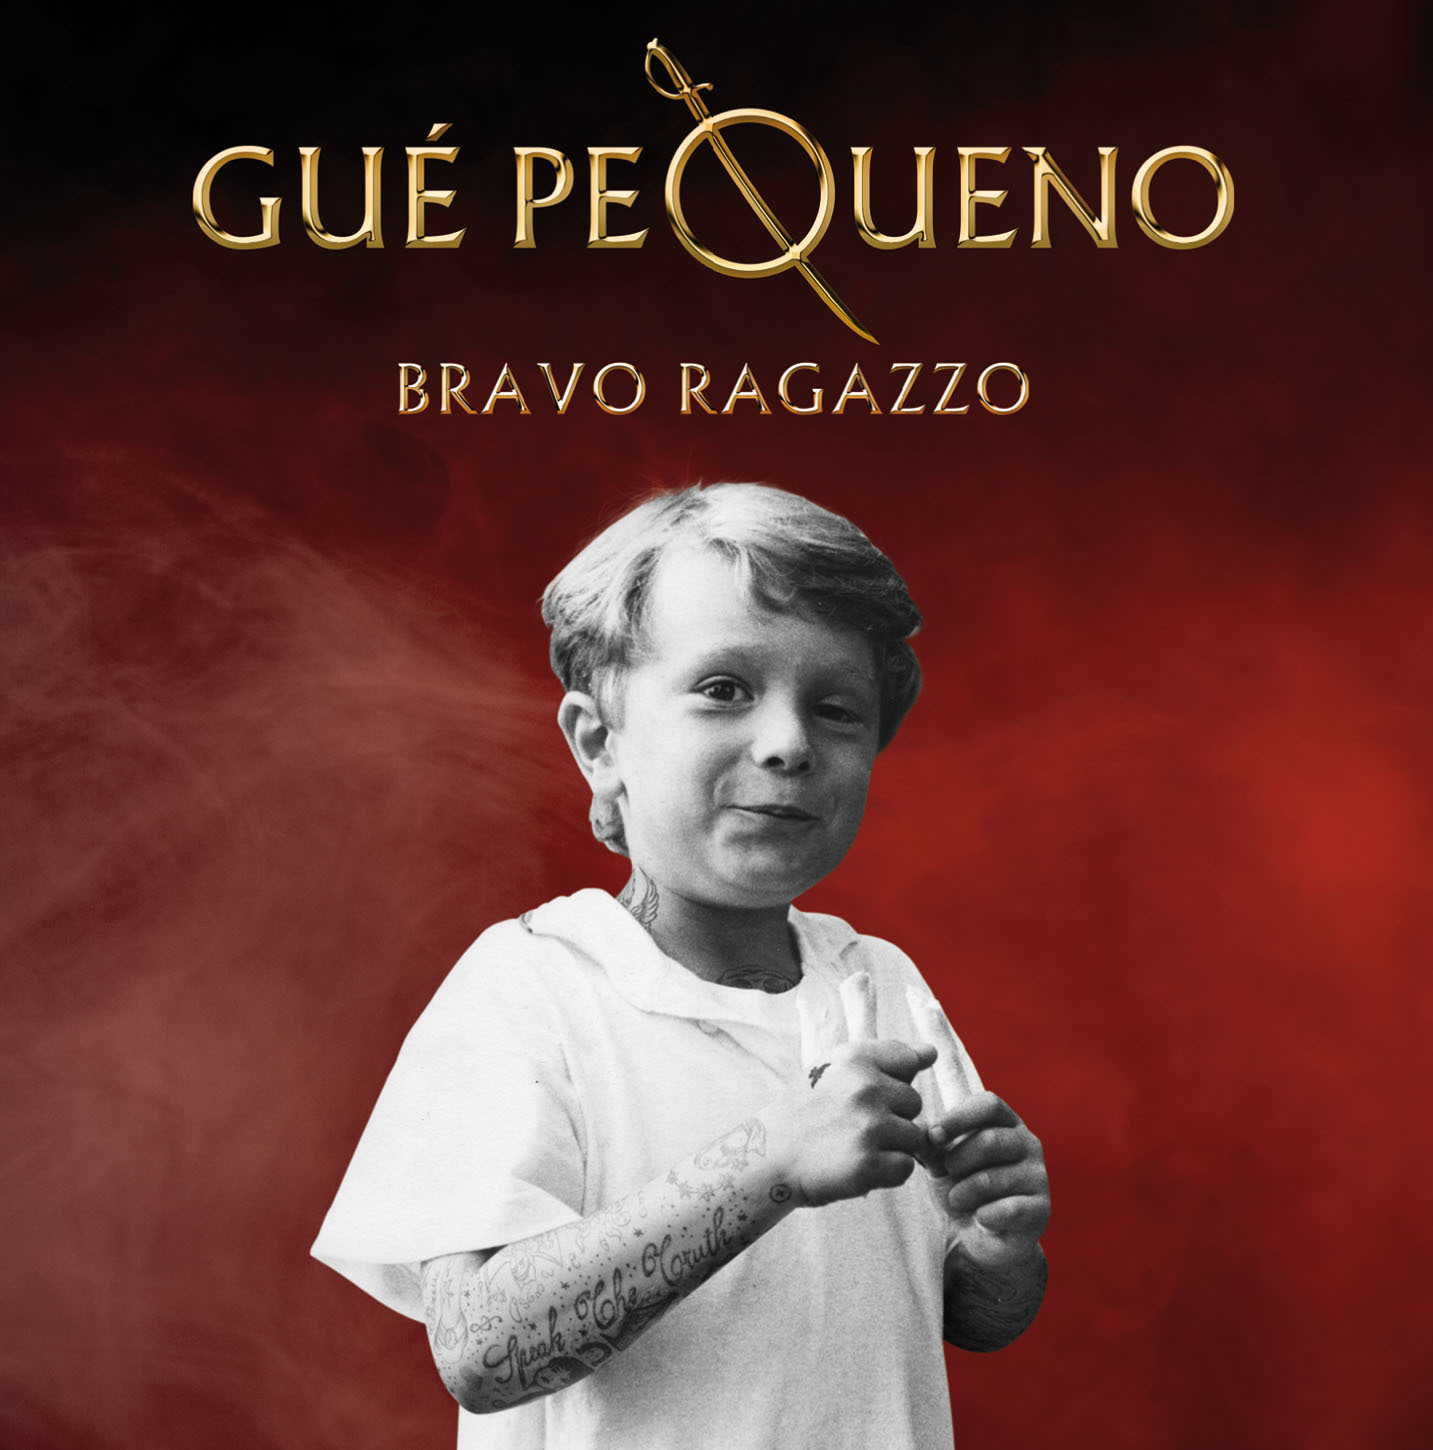 GUE' PEQUENO Bravo Ragazzo - Royal Edition nei negozi una versione speciale celebrazione di uno dei bestseller rap dell'anno